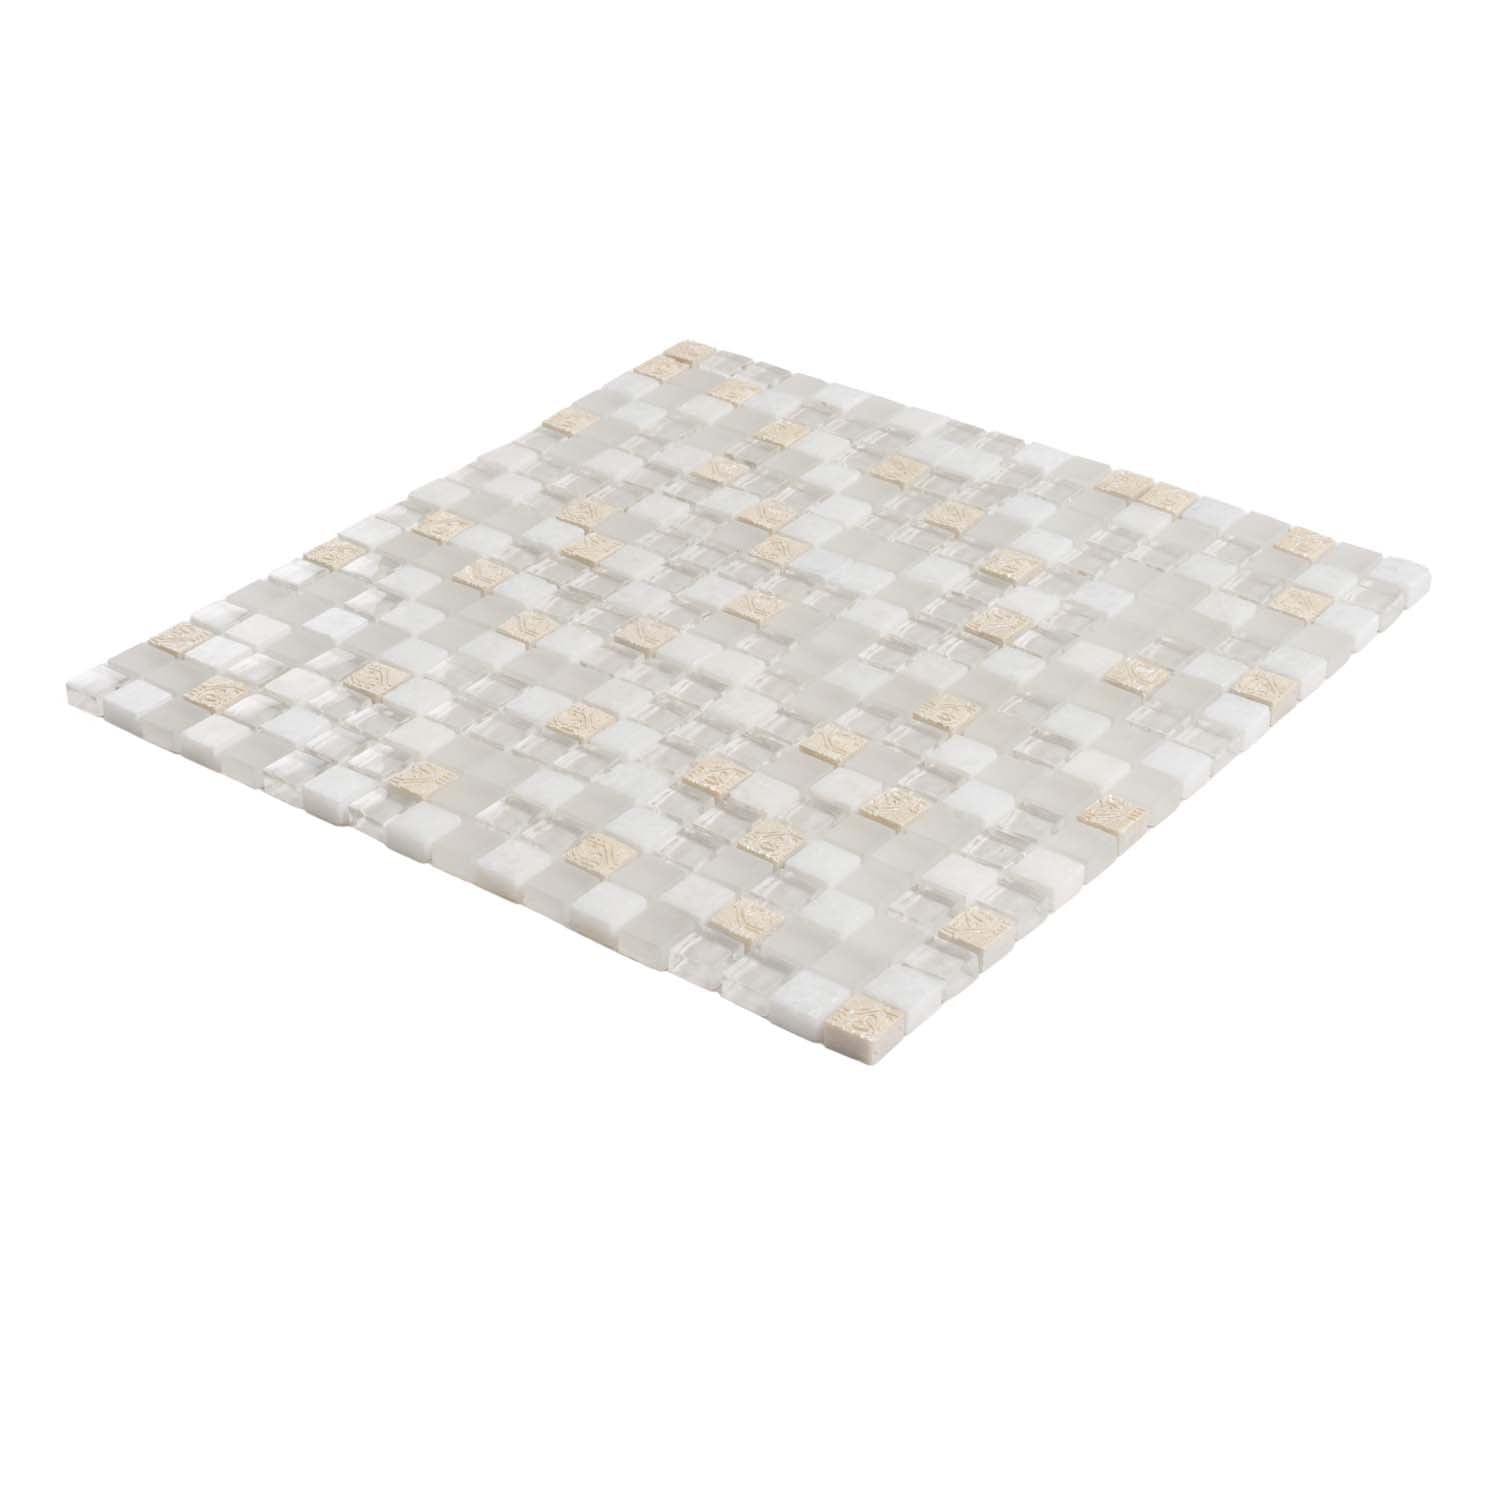 White Stone Mosaic Tile Tile